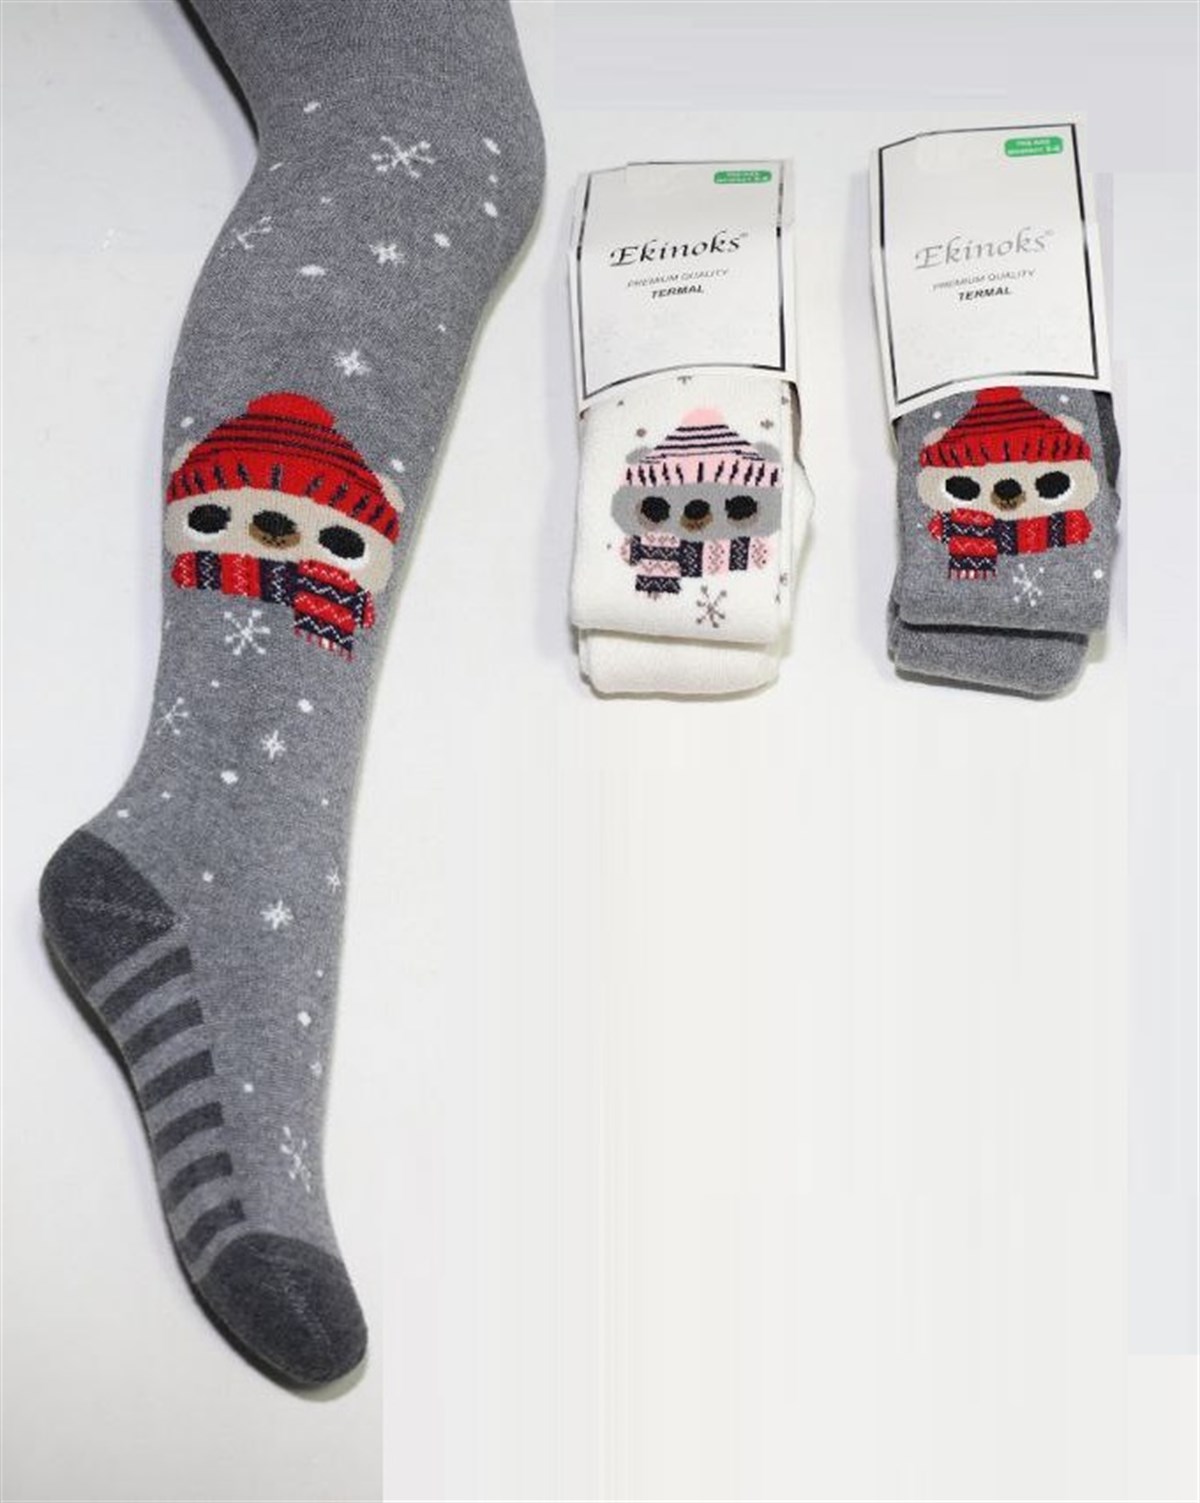 Ekinoks Atkılı Bereli Sevimli Ayı Desenli Havlu Kız Çocuk 3'lü Paket Termal  Külotlu Çorap | Çamaşırcımshop